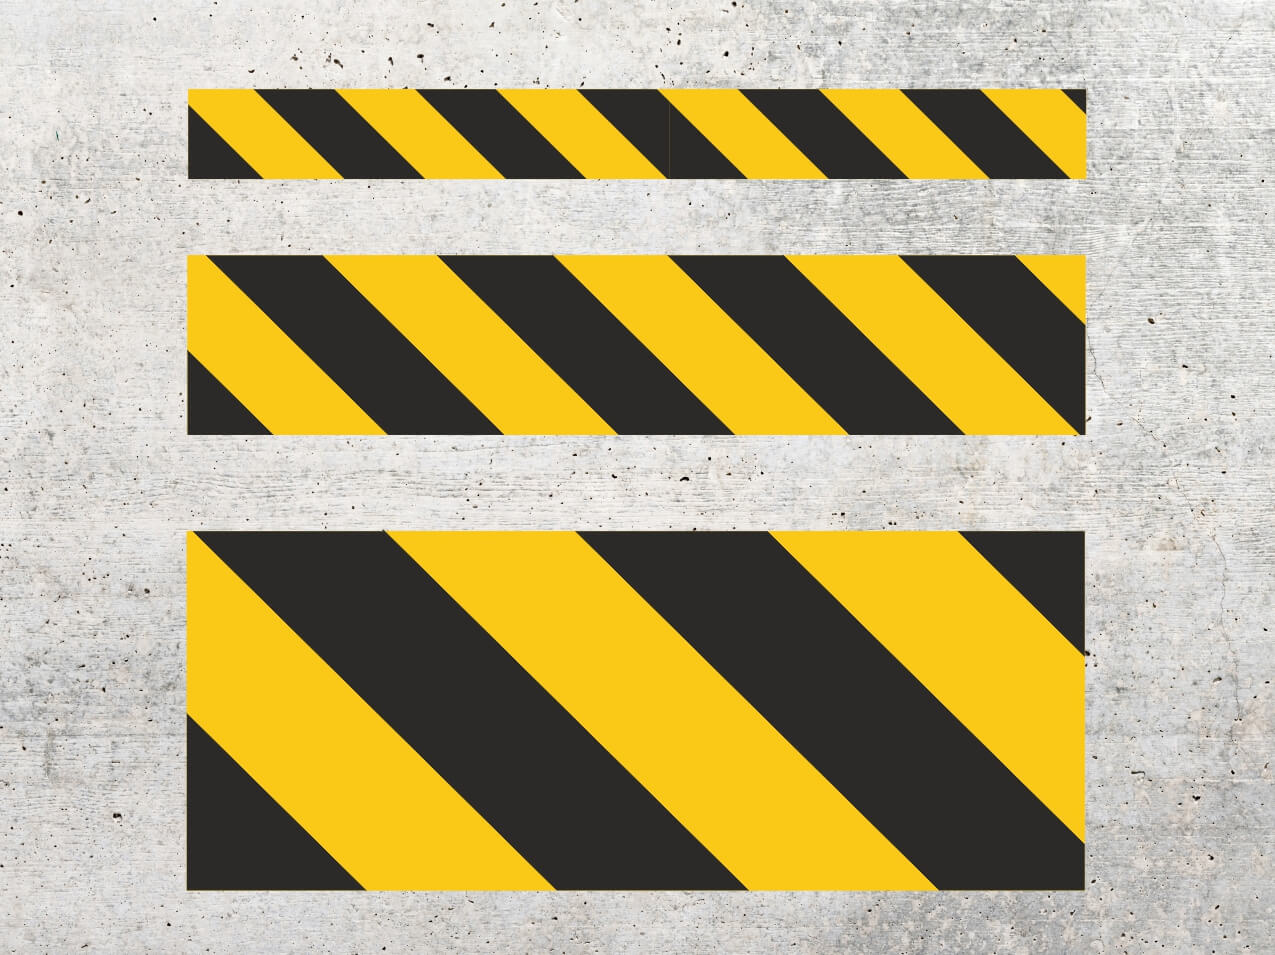 Linien gelb / schwarz als Streifen reflektierend - einbrennbare  Bodenmarkierung, Fahrbahnmarkierung, Wegemarkierung zum Einbrennen, Shop  für alle Werbe Produkte von A - Z